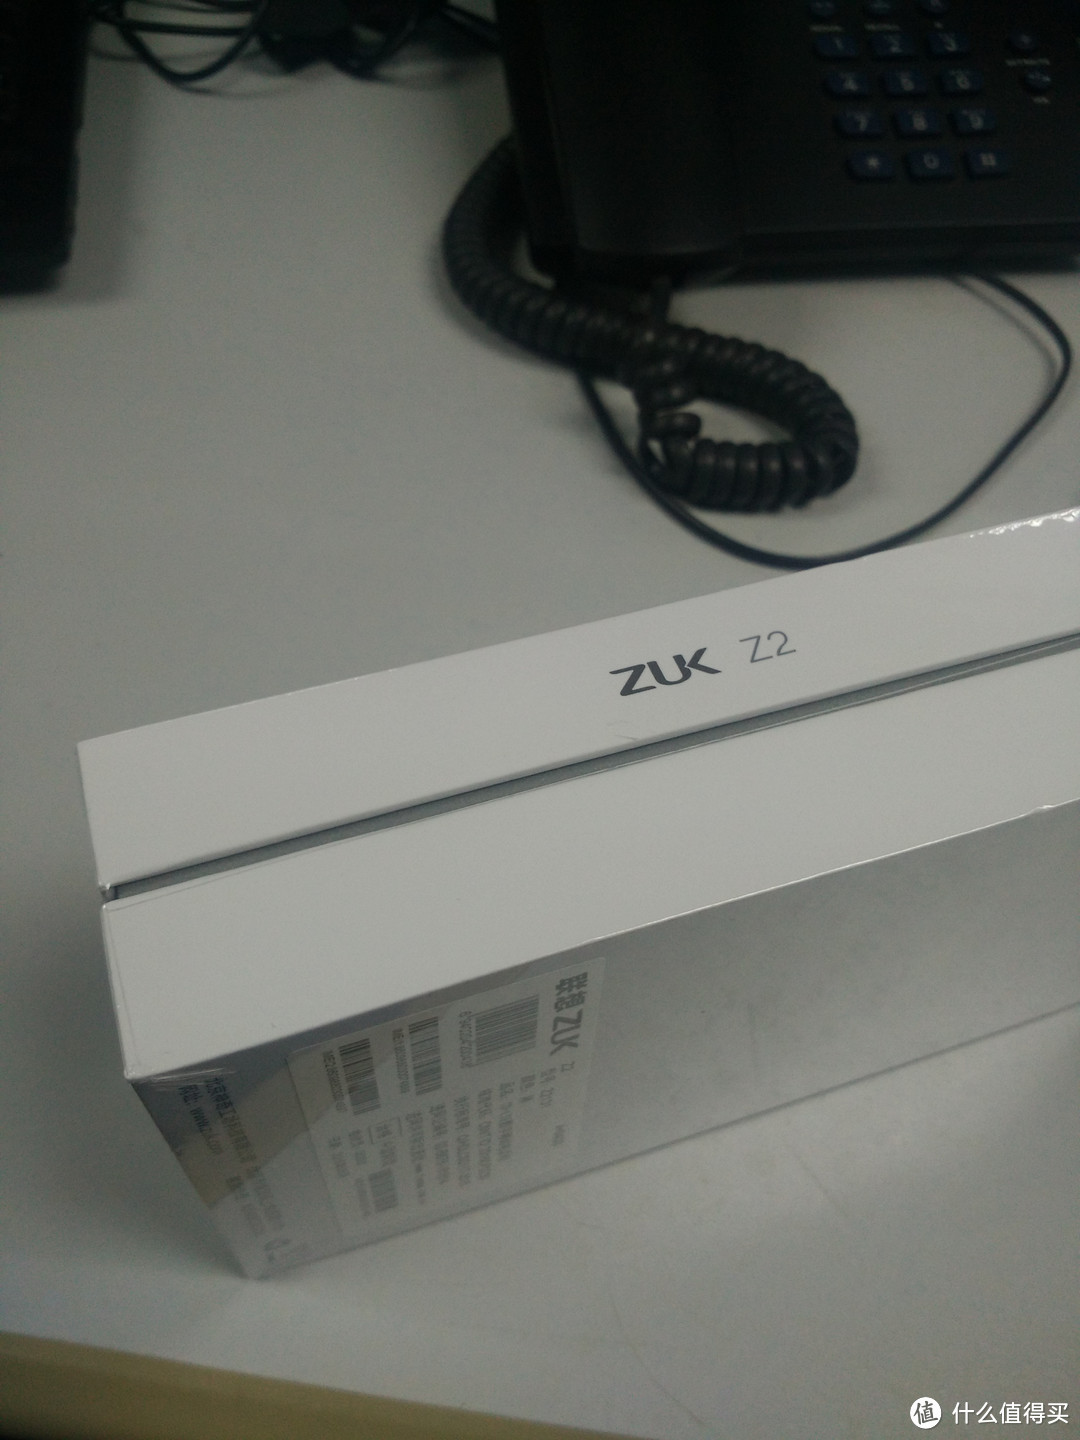 联想 ZUK Z2 手机开箱